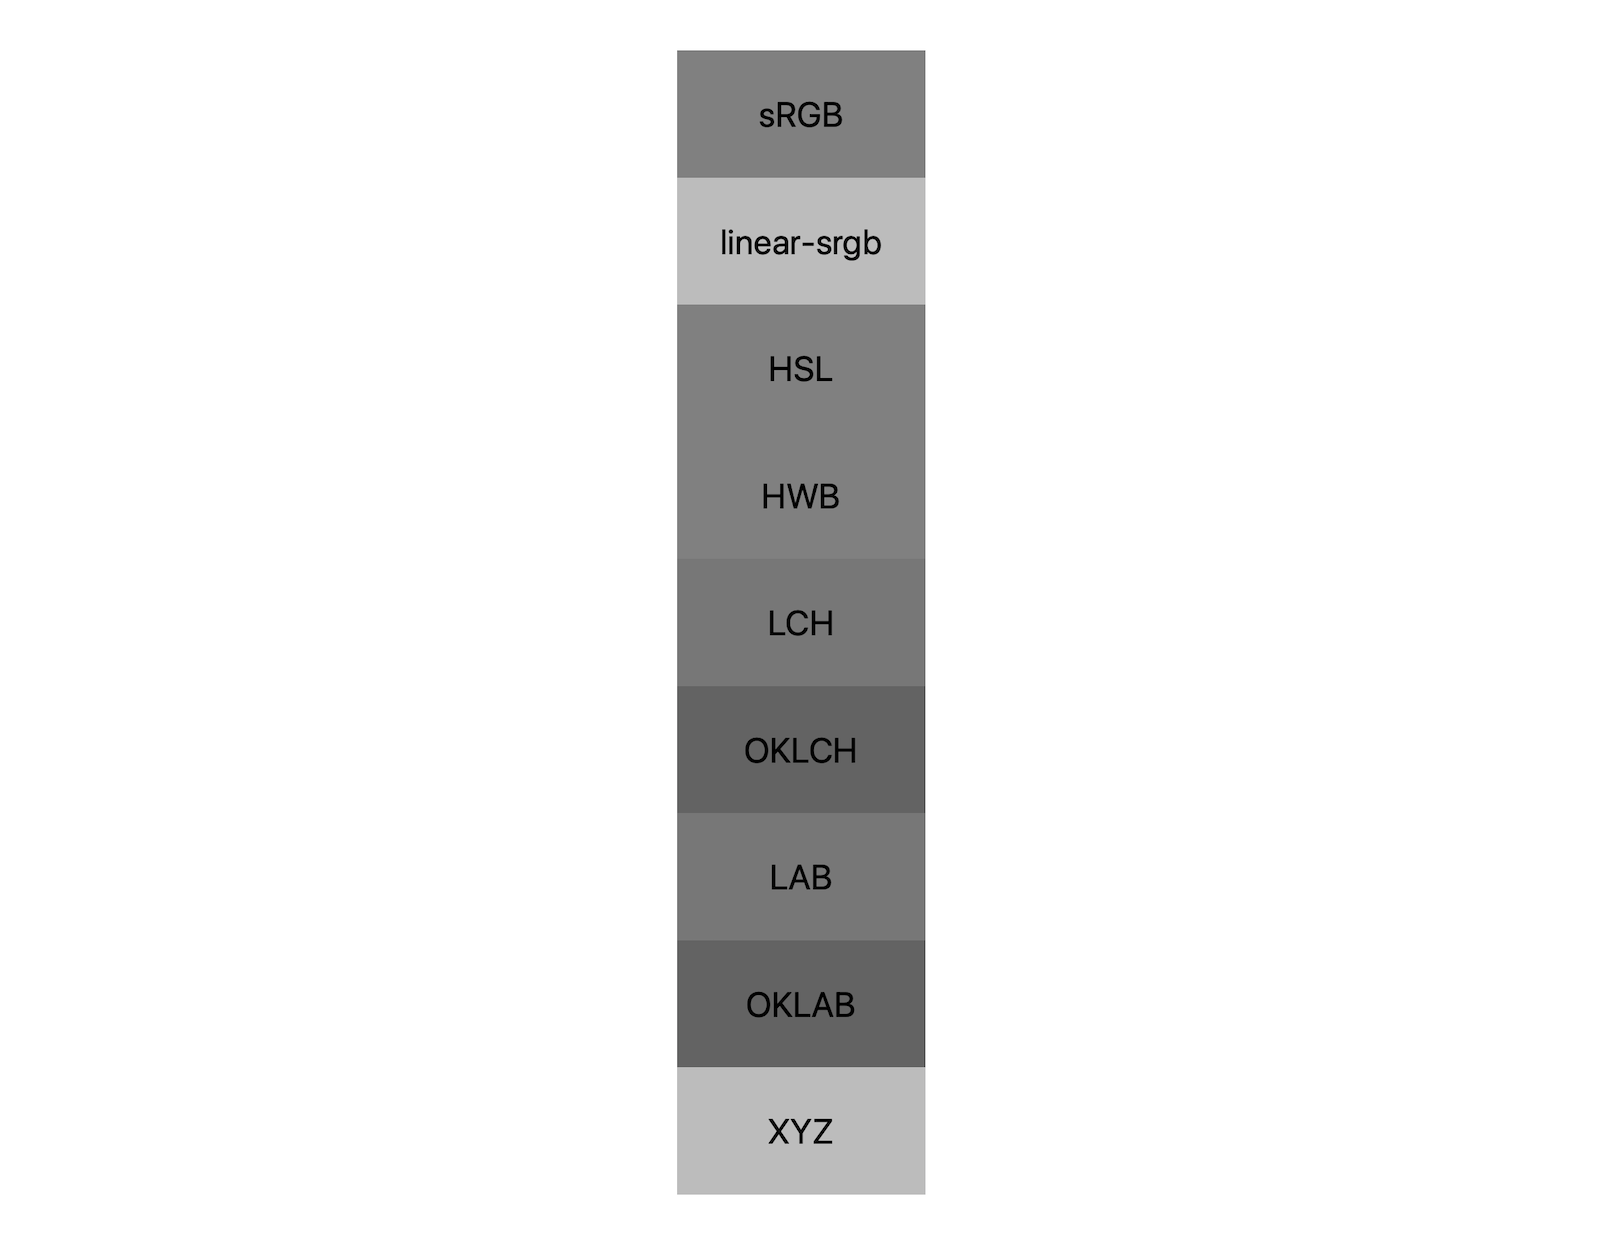 7 przestrzeni kolorów (srgb, linear-srgb, lch, oklch, lab, oklab, xyz) przedstawia efekt połączenia czerni i bieli. Pokazanych jest w przybliżeniu 5 różnych odcieni, co pokazuje, że każda przestrzeń kolorów może w różny sposób mieszać się z szarym.